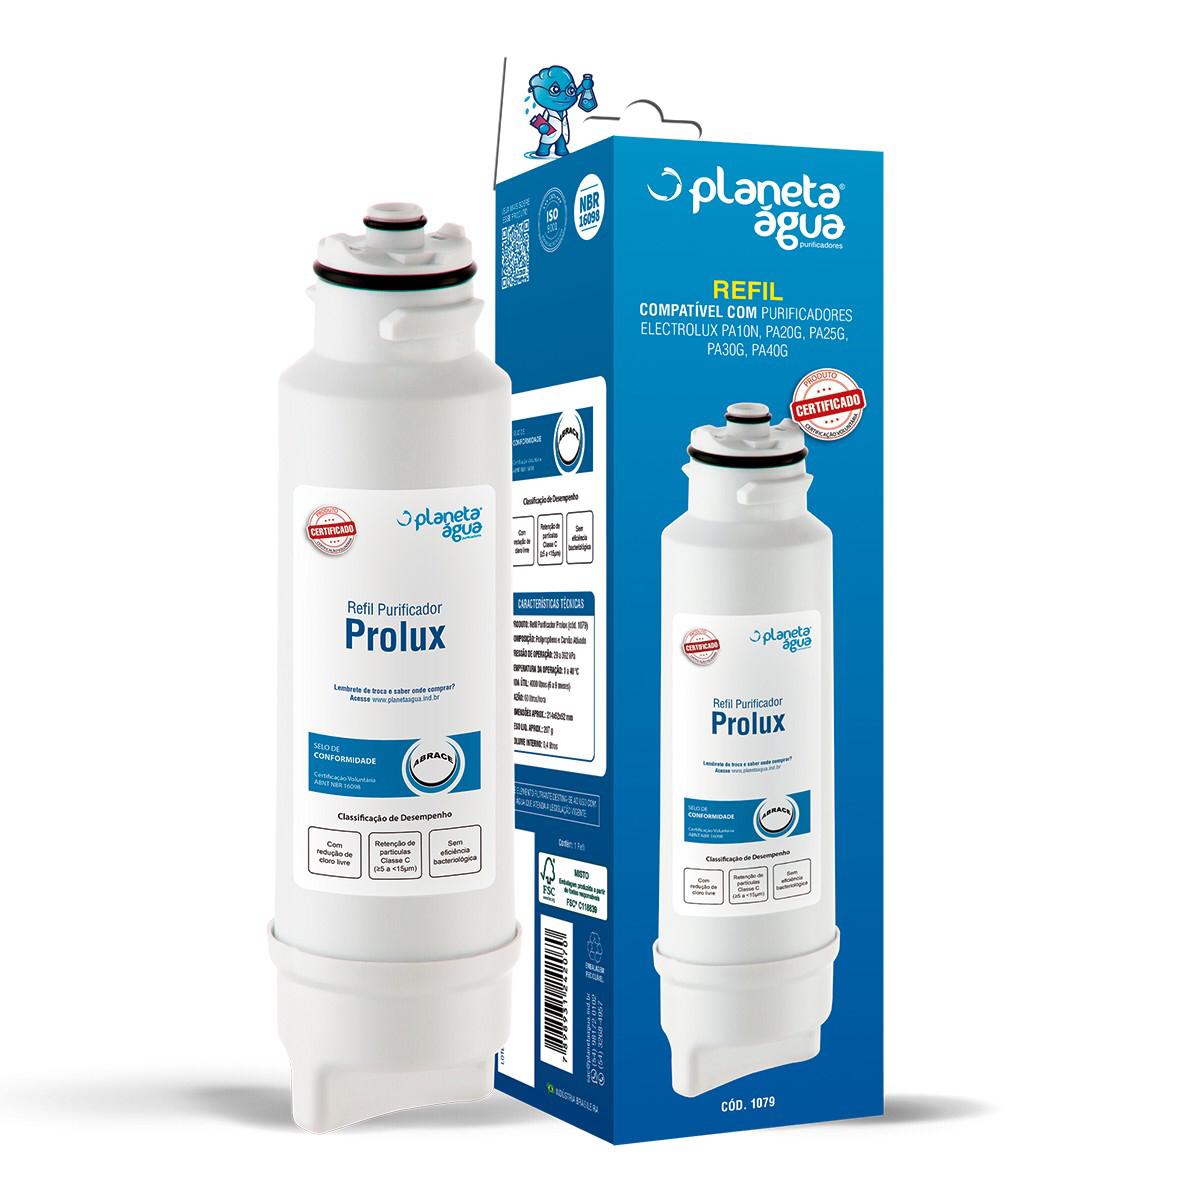 Refil PROLUX para purificadores Electrolux PA10N, PA20G, PA25G, PA30G, PA40G - Similar